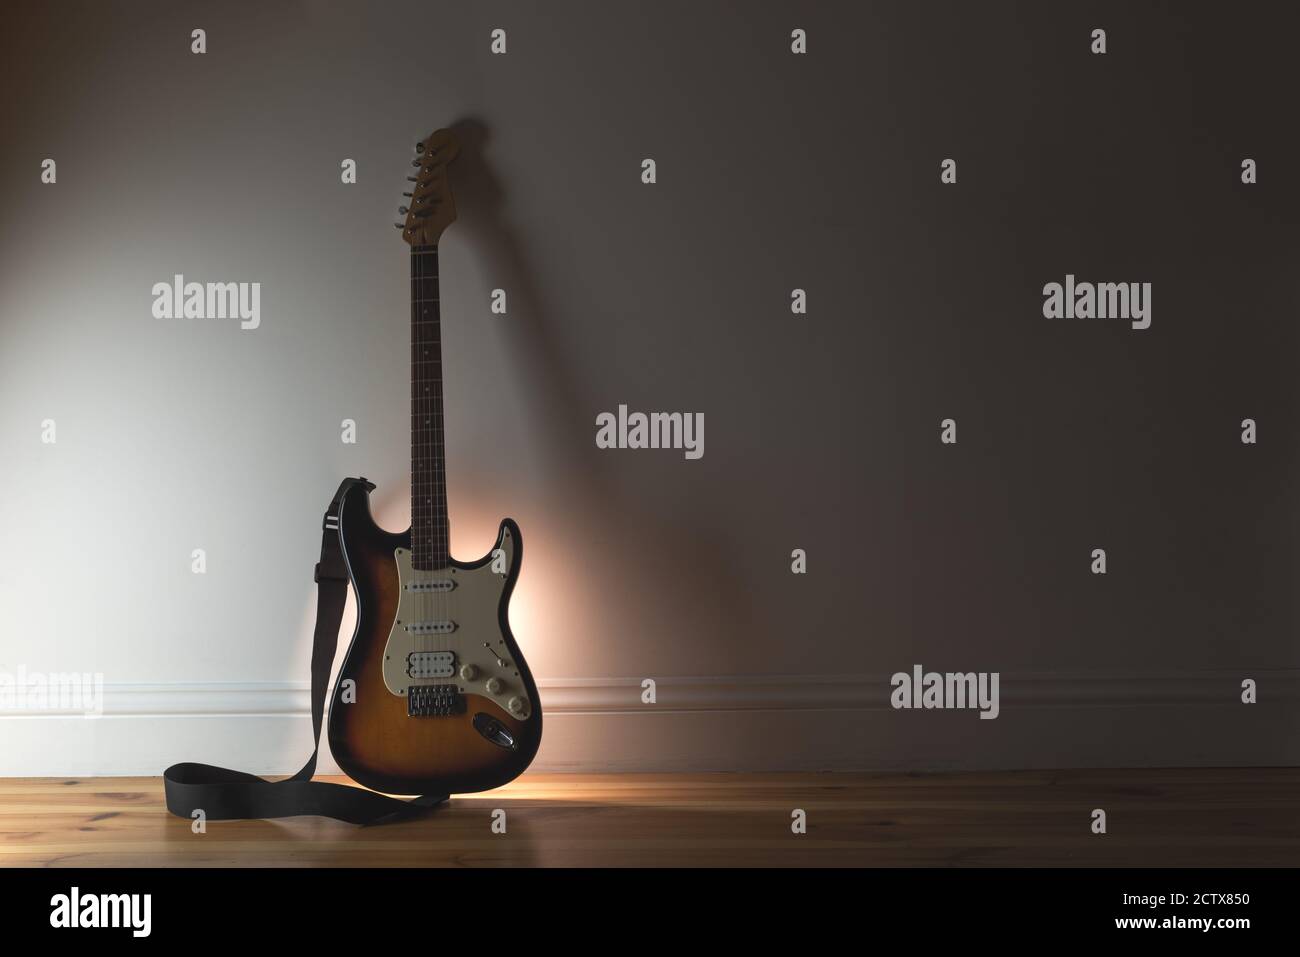 Musik Sound Hintergrund mit klassischer Elektro-Gitarre und schwarzem Kabel Auf Wandhintergrund Stockfoto